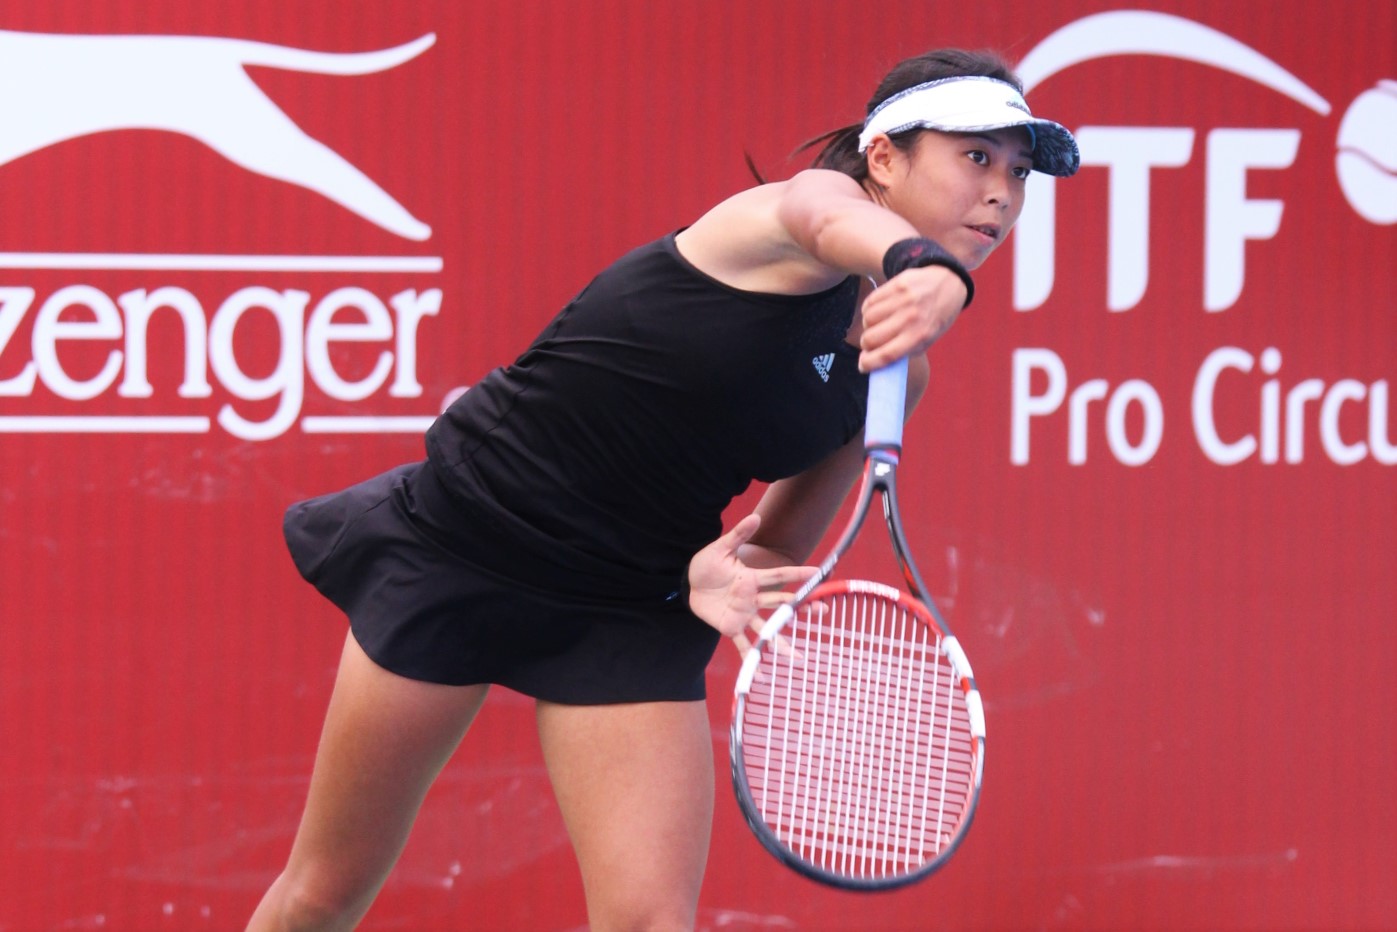 李花塵打下職業生涯第二冠。中華民國網球協會提供